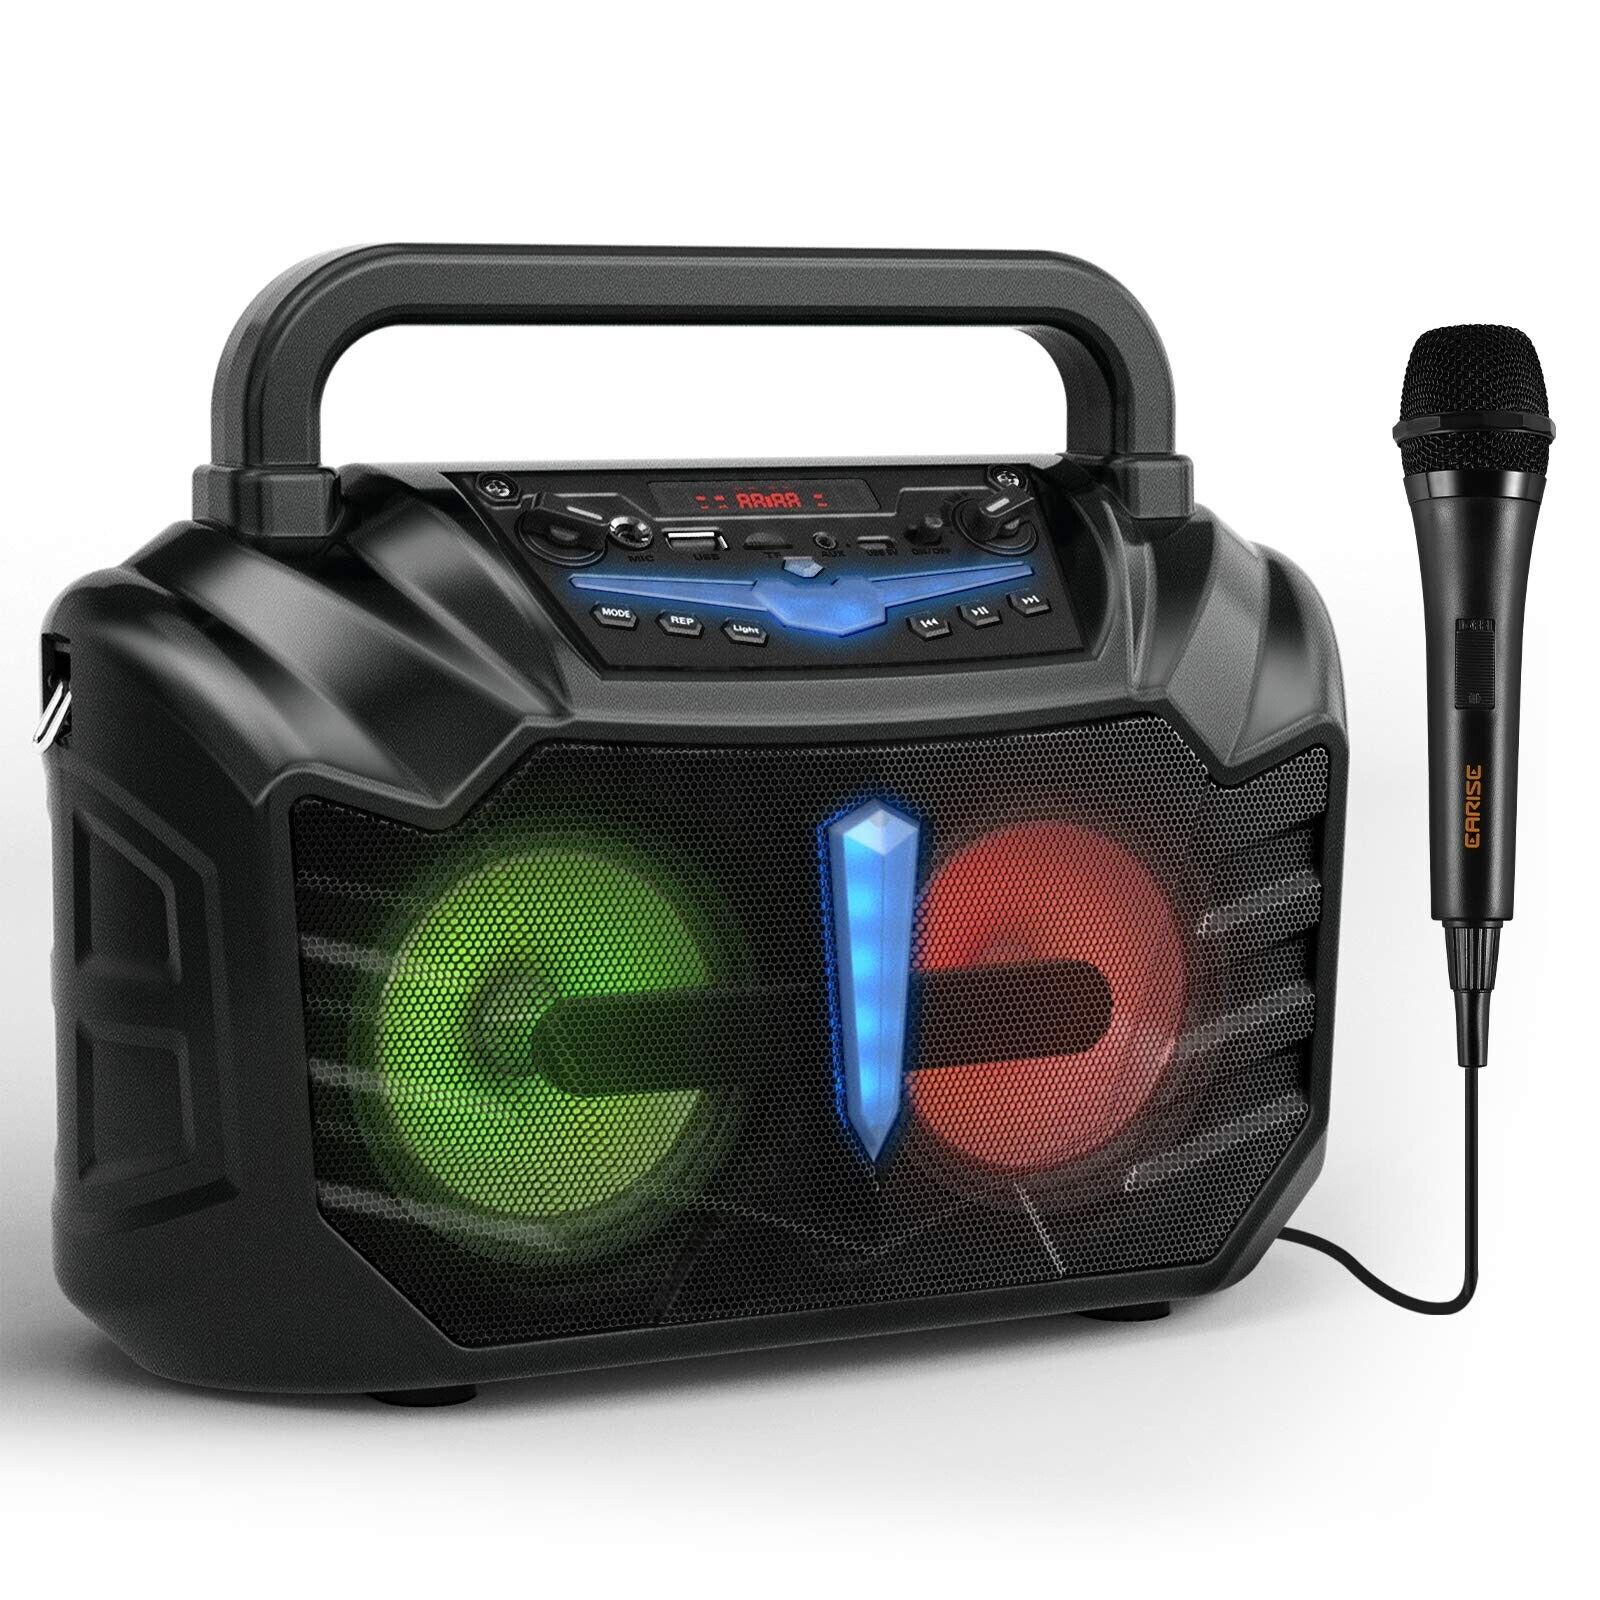 EARISE T60 Portable Karaoke/PA System Speaker w/ Wired Microphone